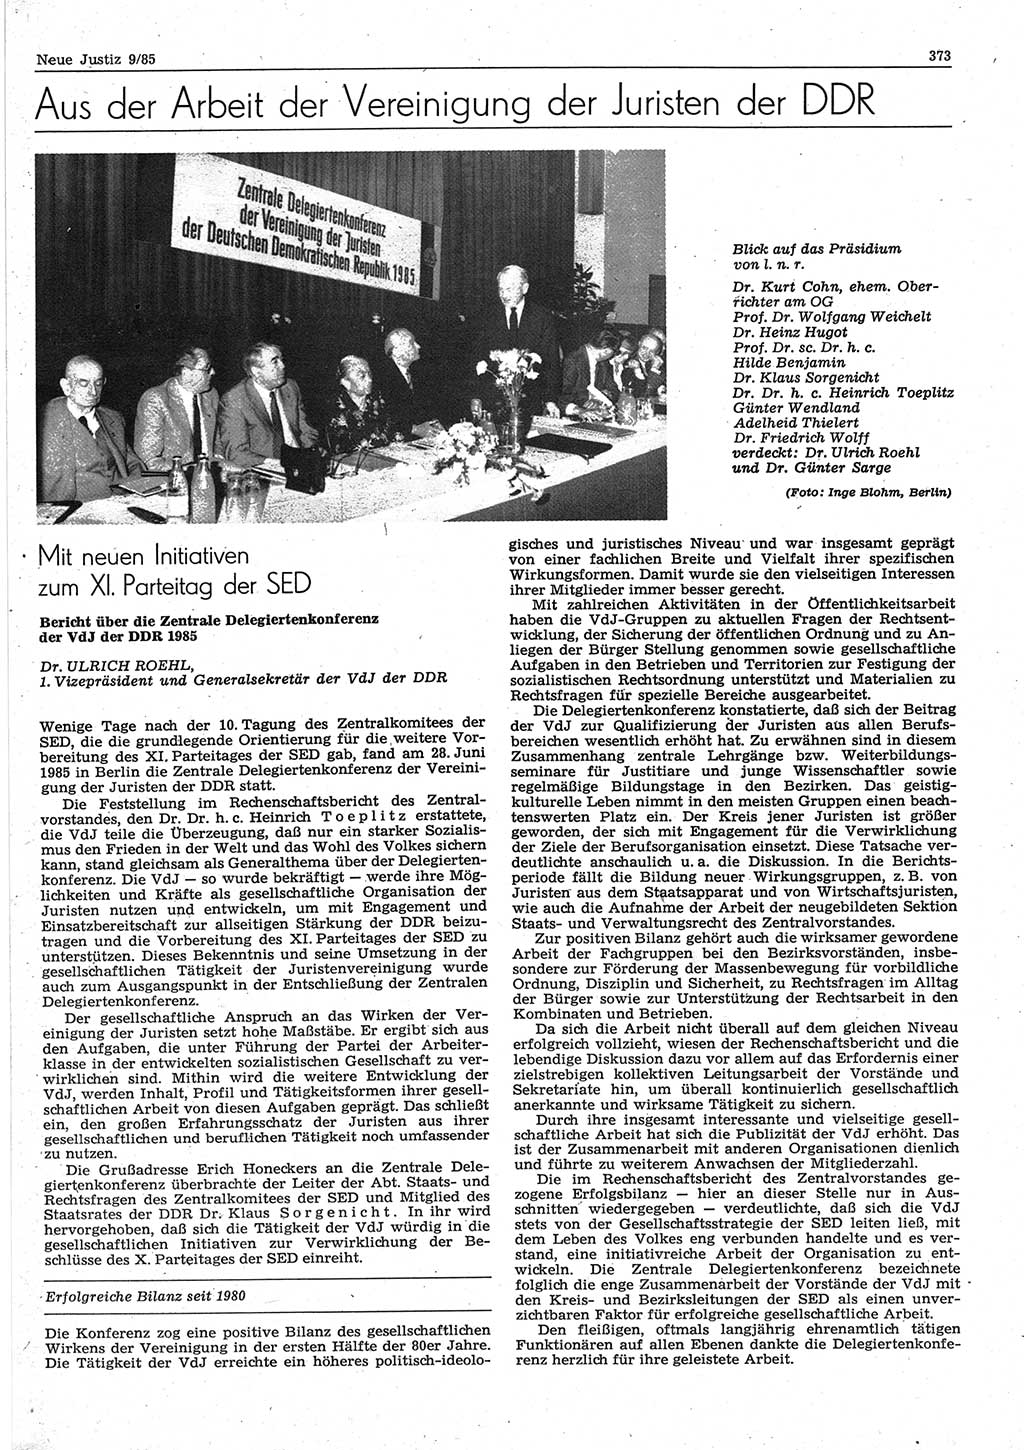 Neue Justiz (NJ), Zeitschrift für sozialistisches Recht und Gesetzlichkeit [Deutsche Demokratische Republik (DDR)], 39. Jahrgang 1985, Seite 373 (NJ DDR 1985, S. 373)